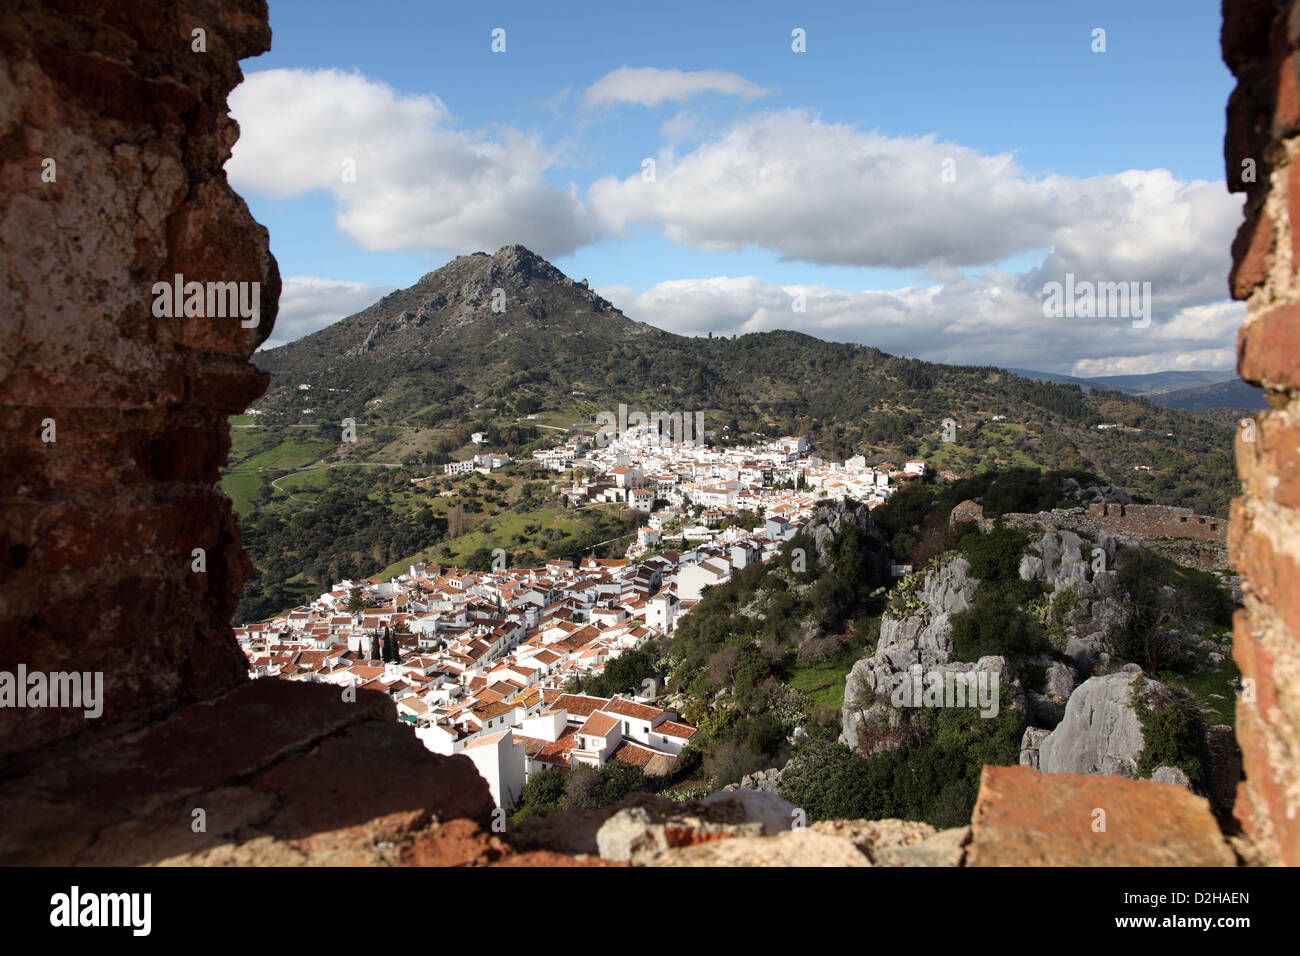 Vue sur le village andalou Ronda, Espagne Banque D'Images